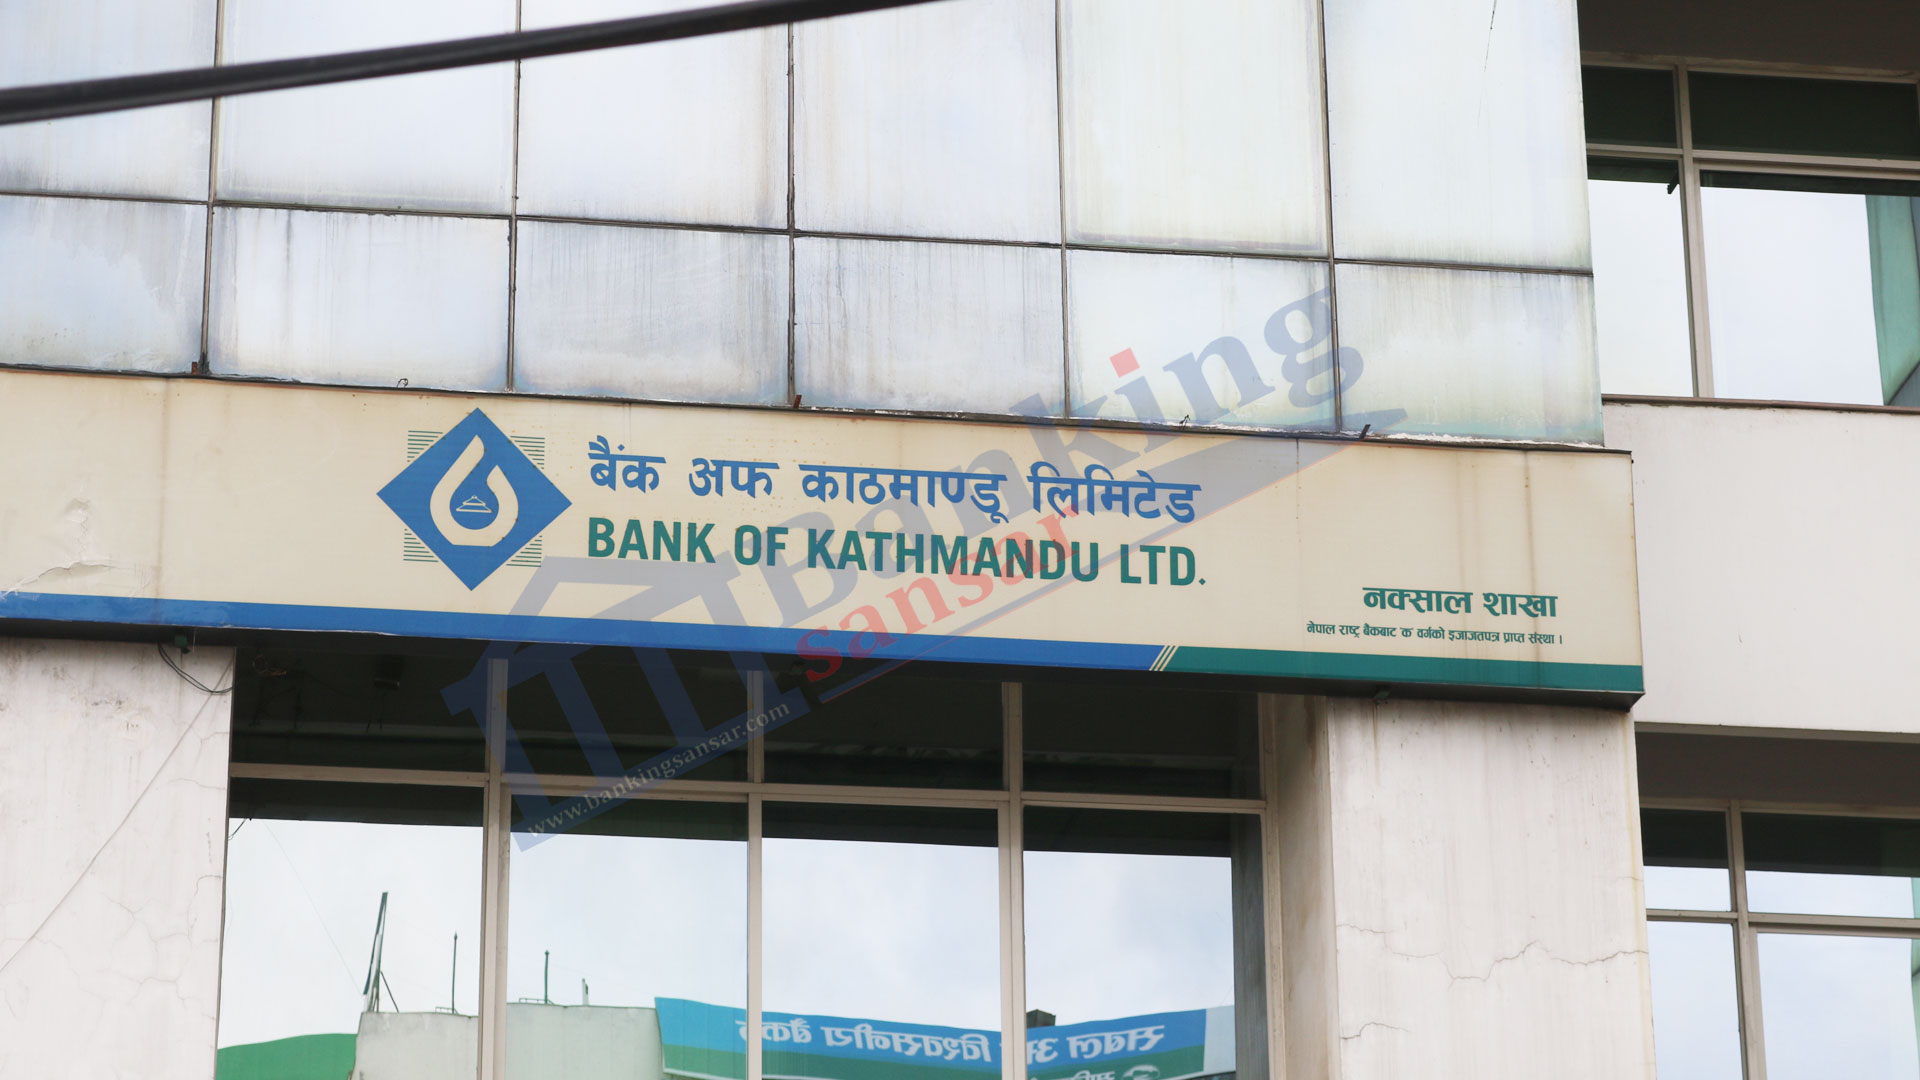 bank of kathmandu